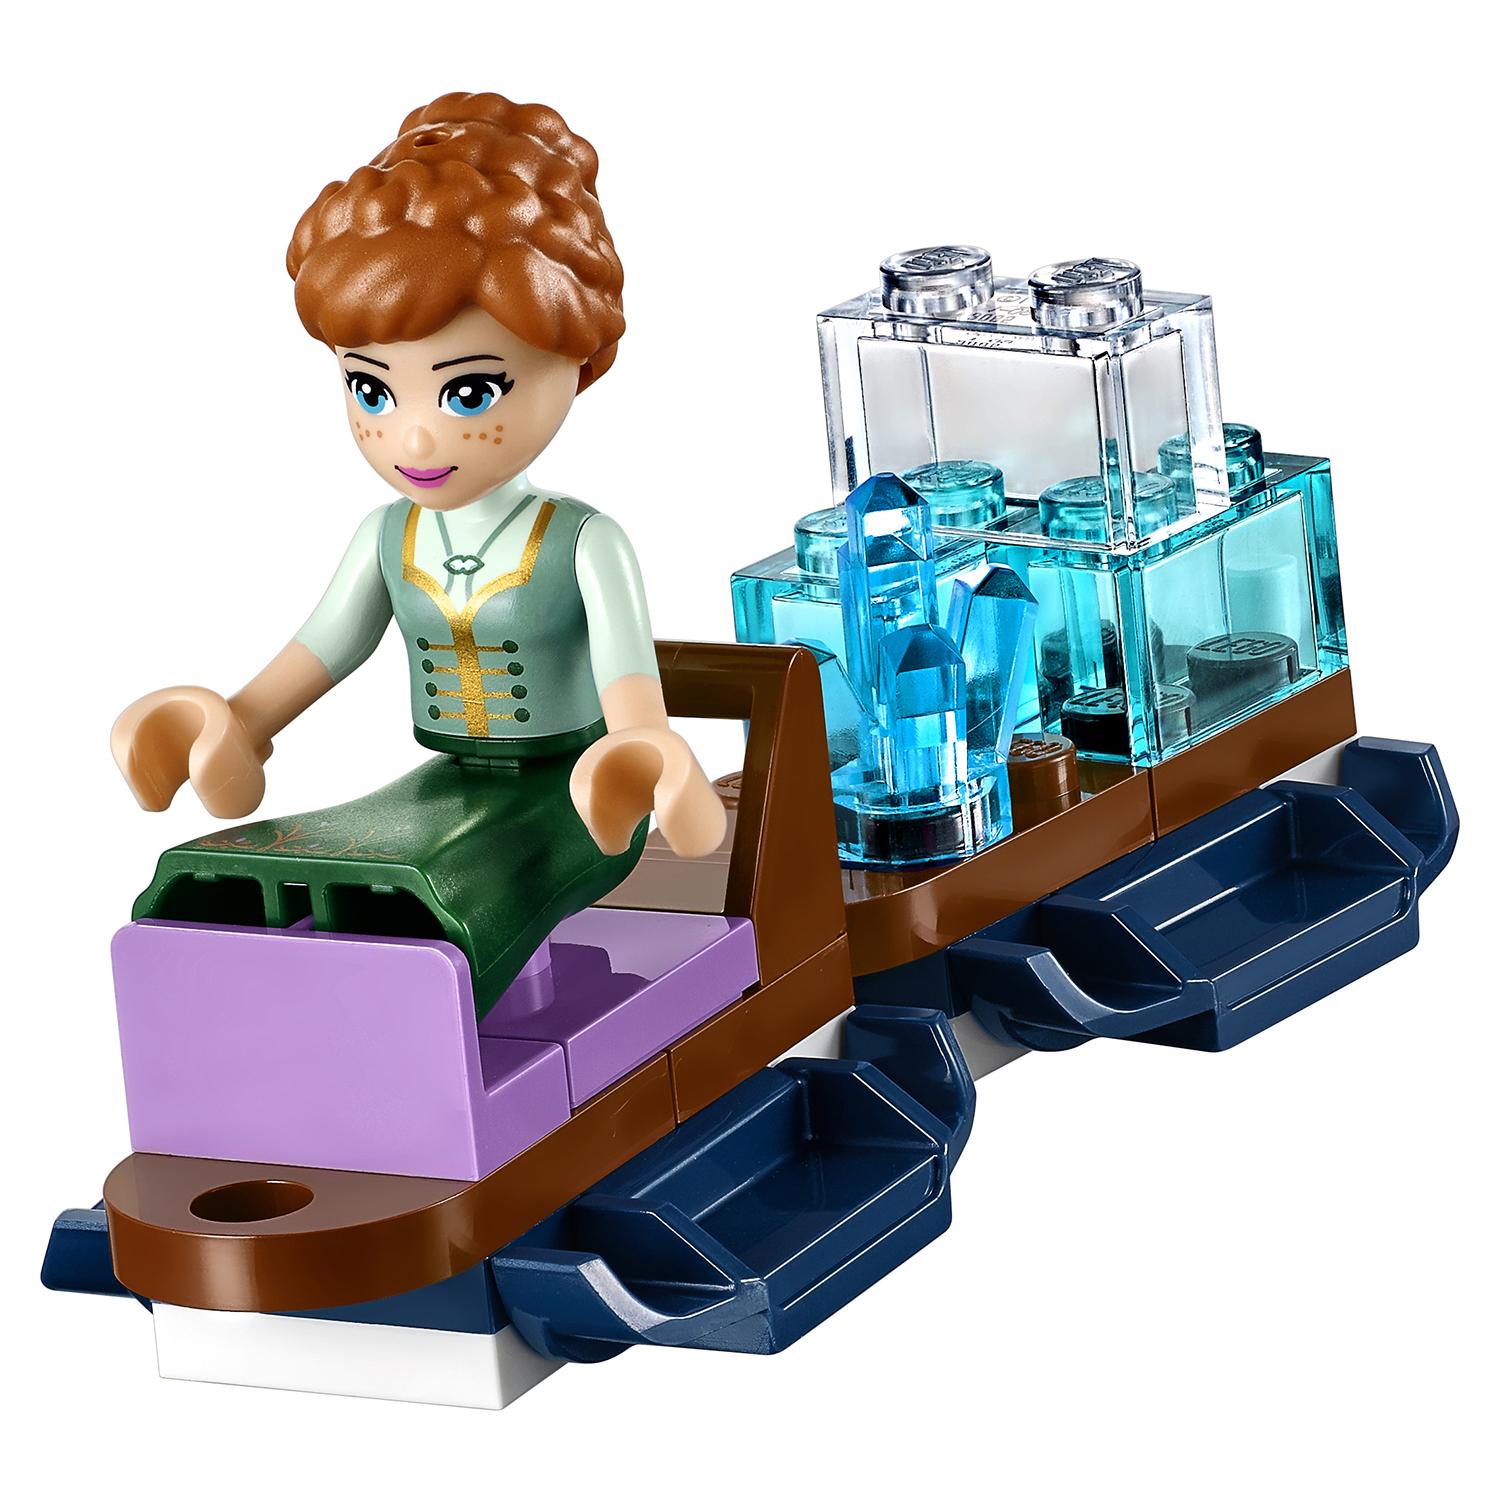 Lego Disney Princess 41148 Волшебный ледяной замок Эльзы